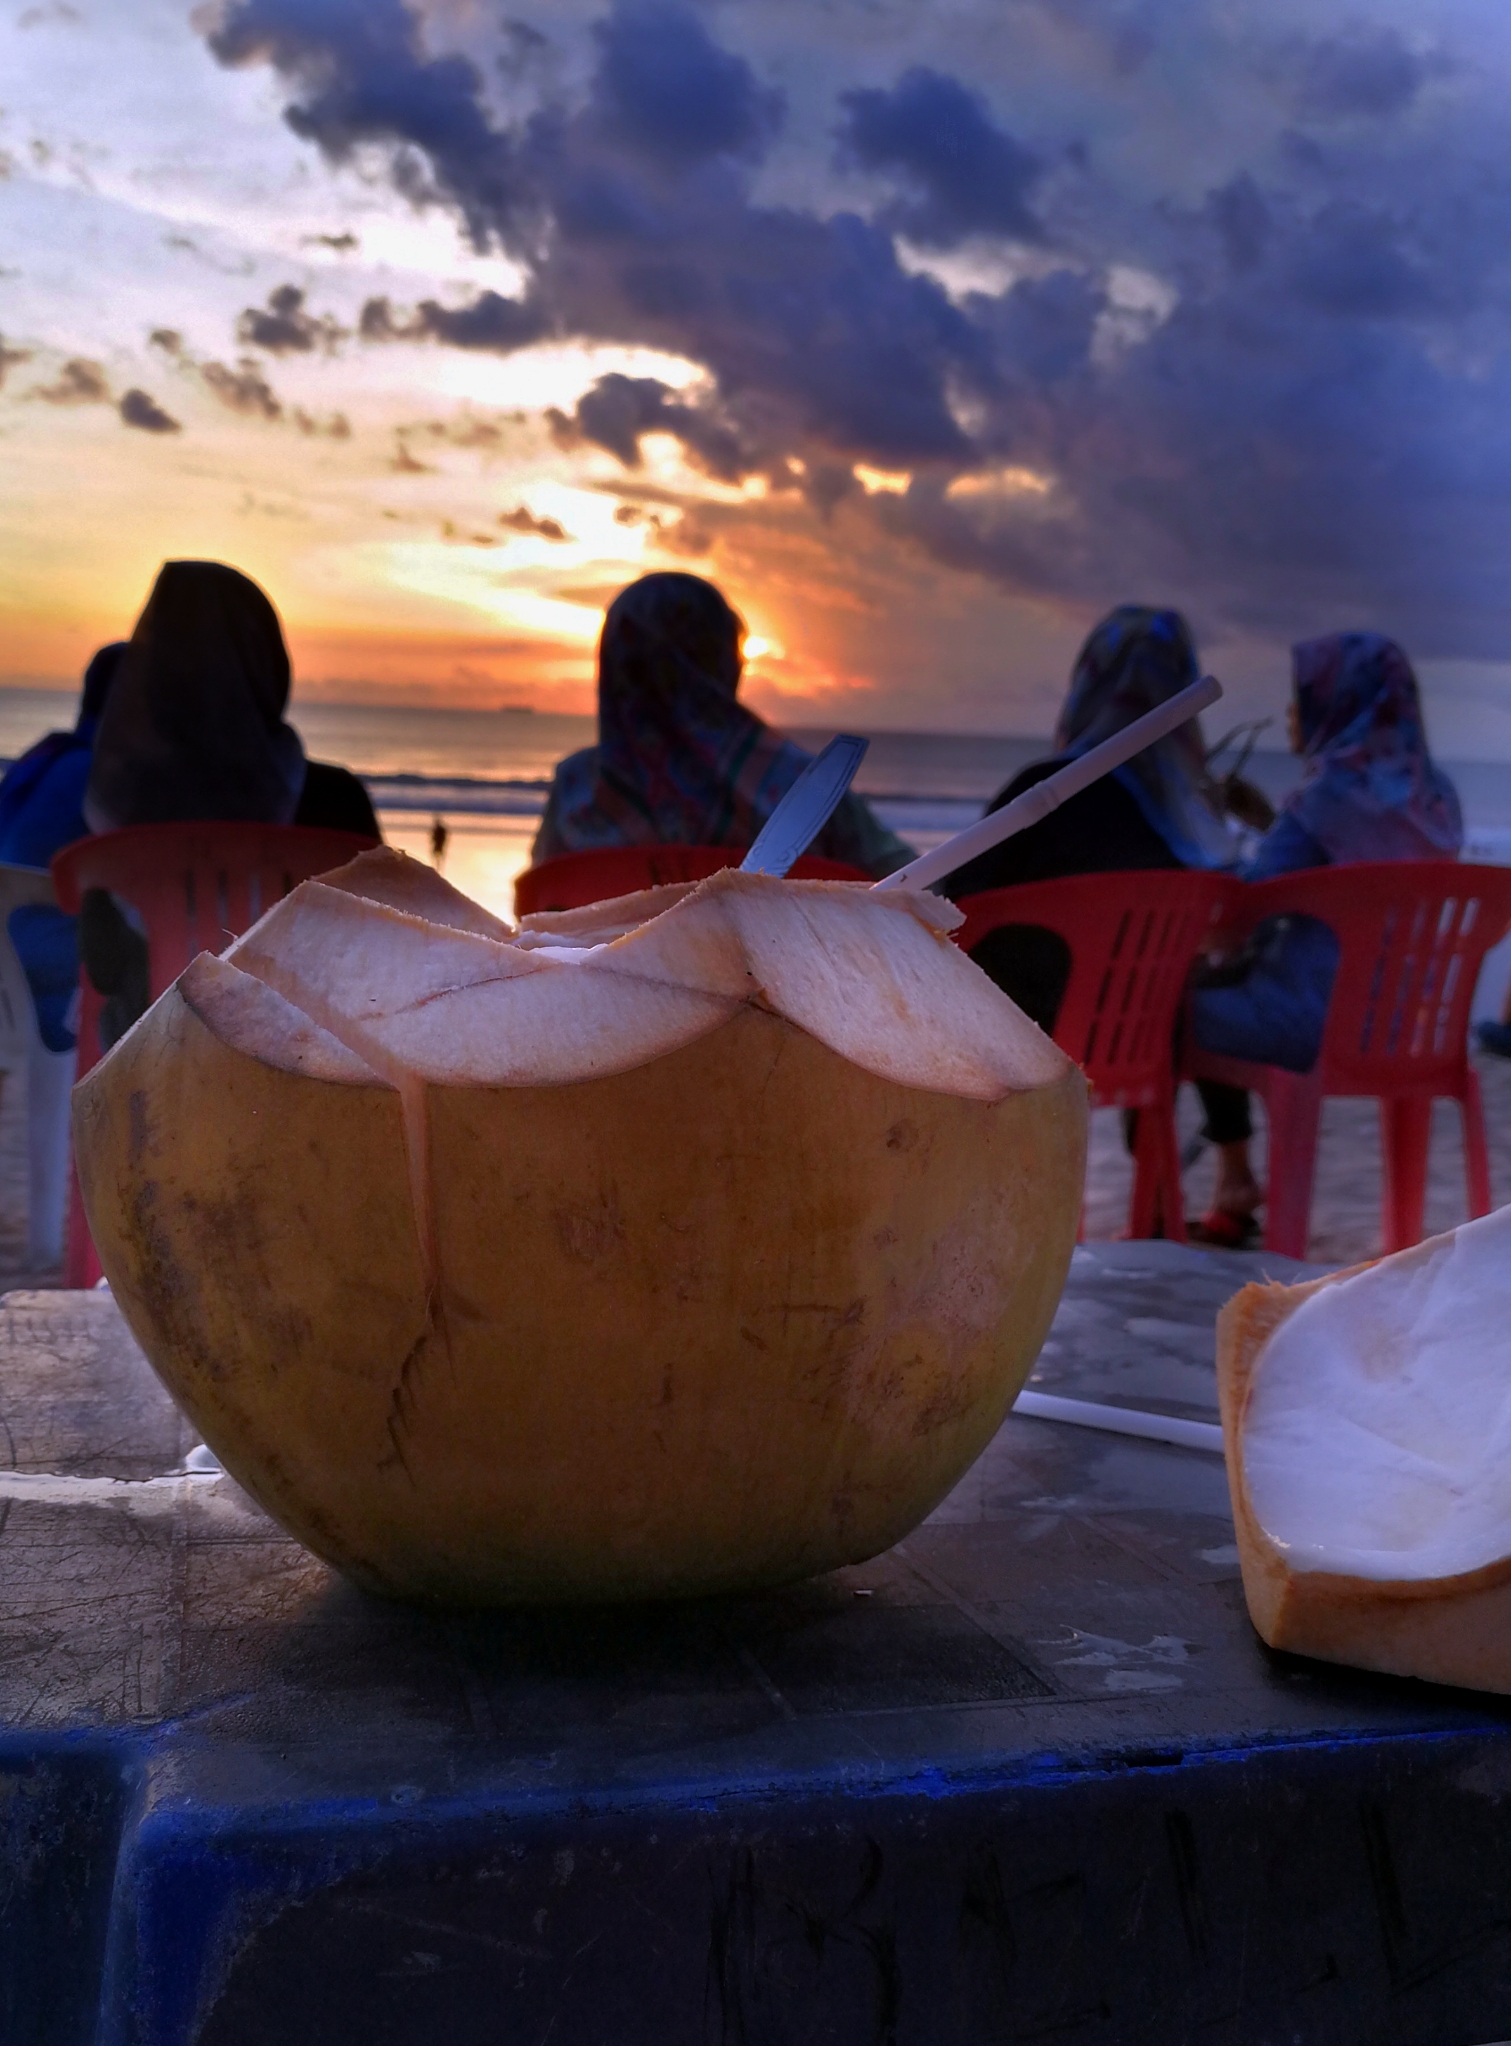 a kedvenc időtöltésem Indonéziában: naplemente és kókusztej